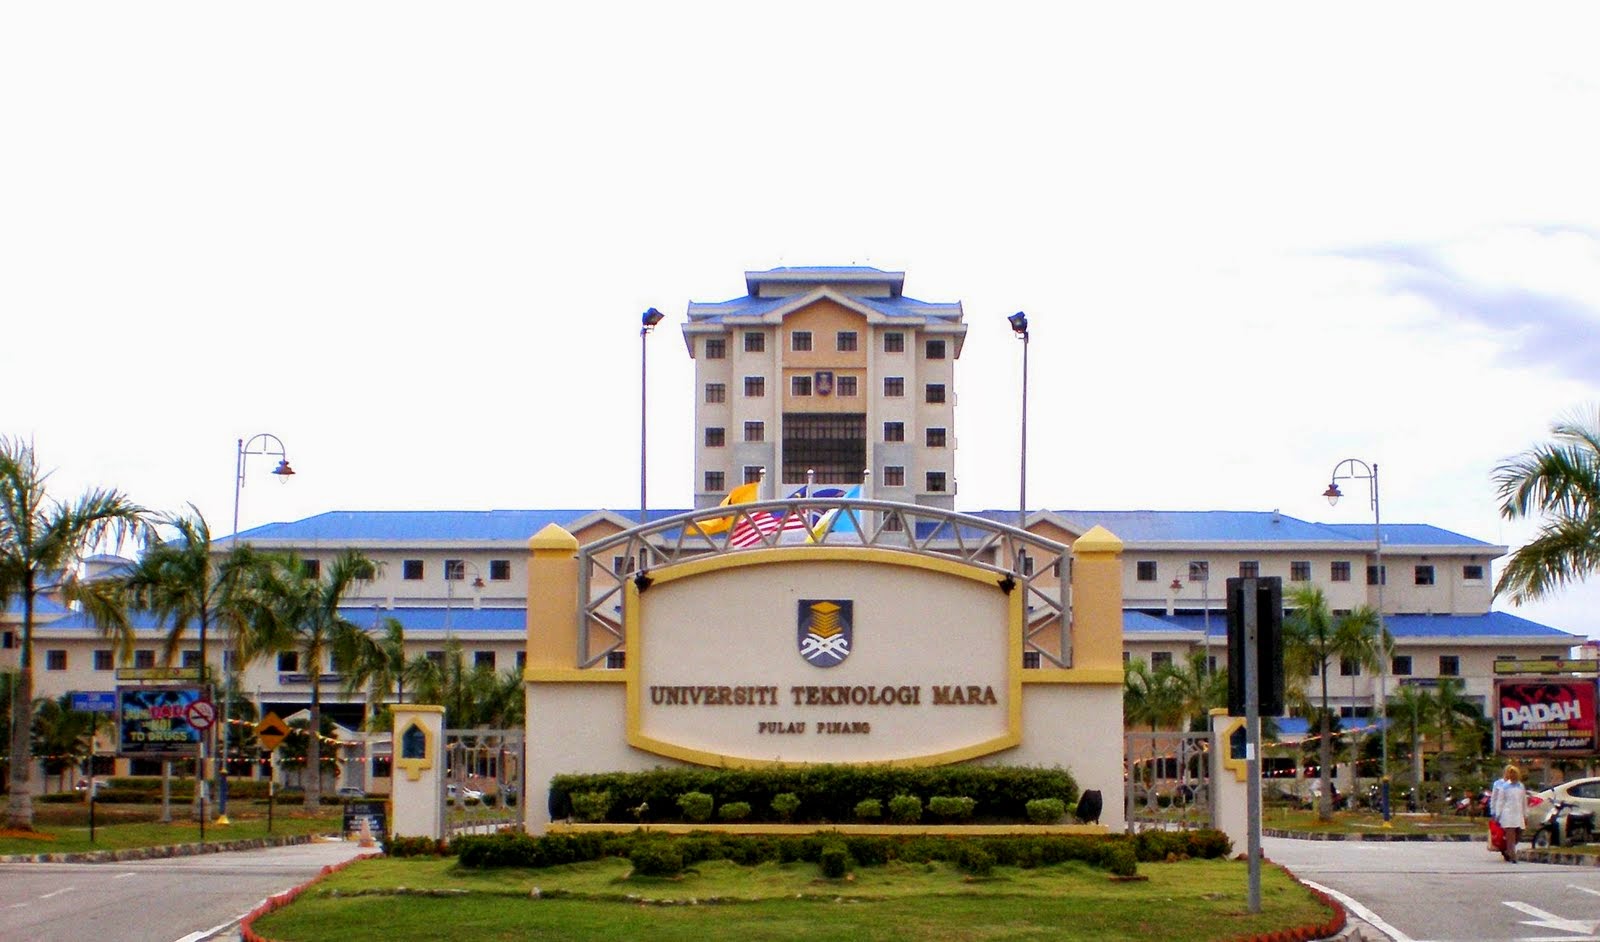 Majlis Perwakilan Pelajar Universiti Teknologi Maracawangan Pulau Pinang Permatang Pauh